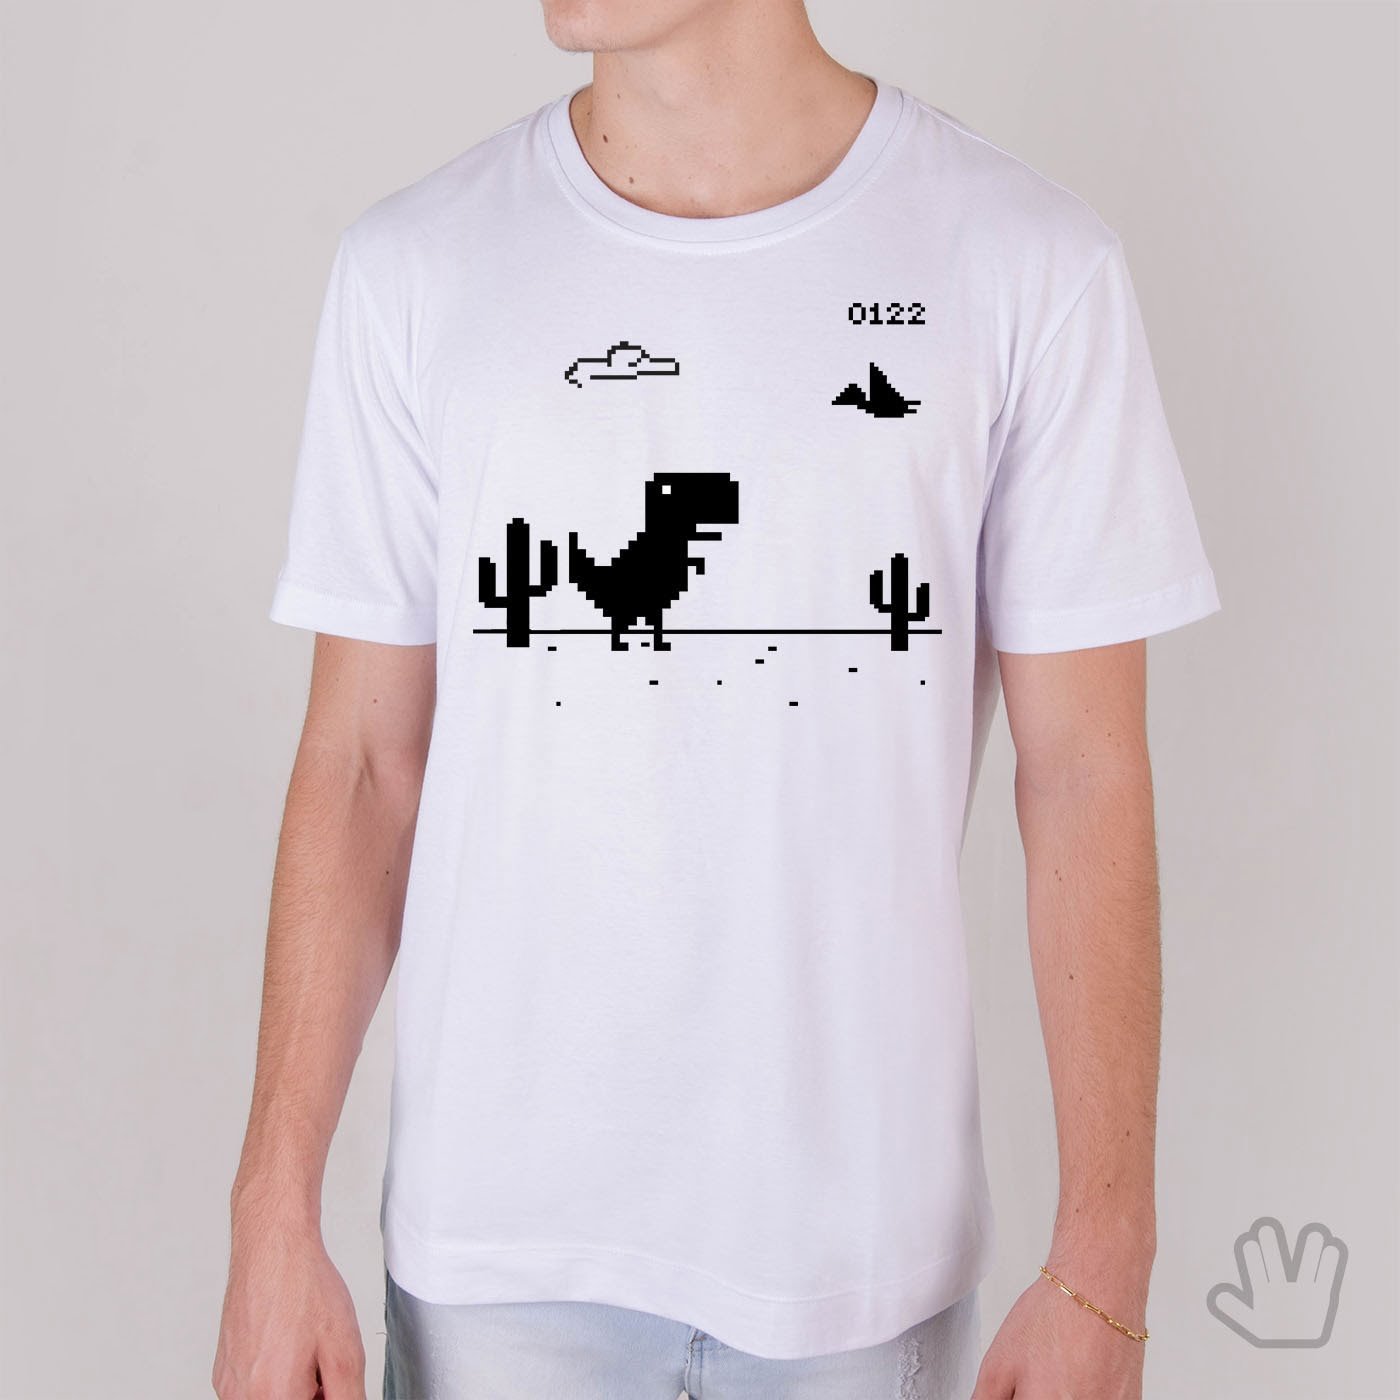 Camiseta Joguinho Dinossauro Chrome Sem Internet